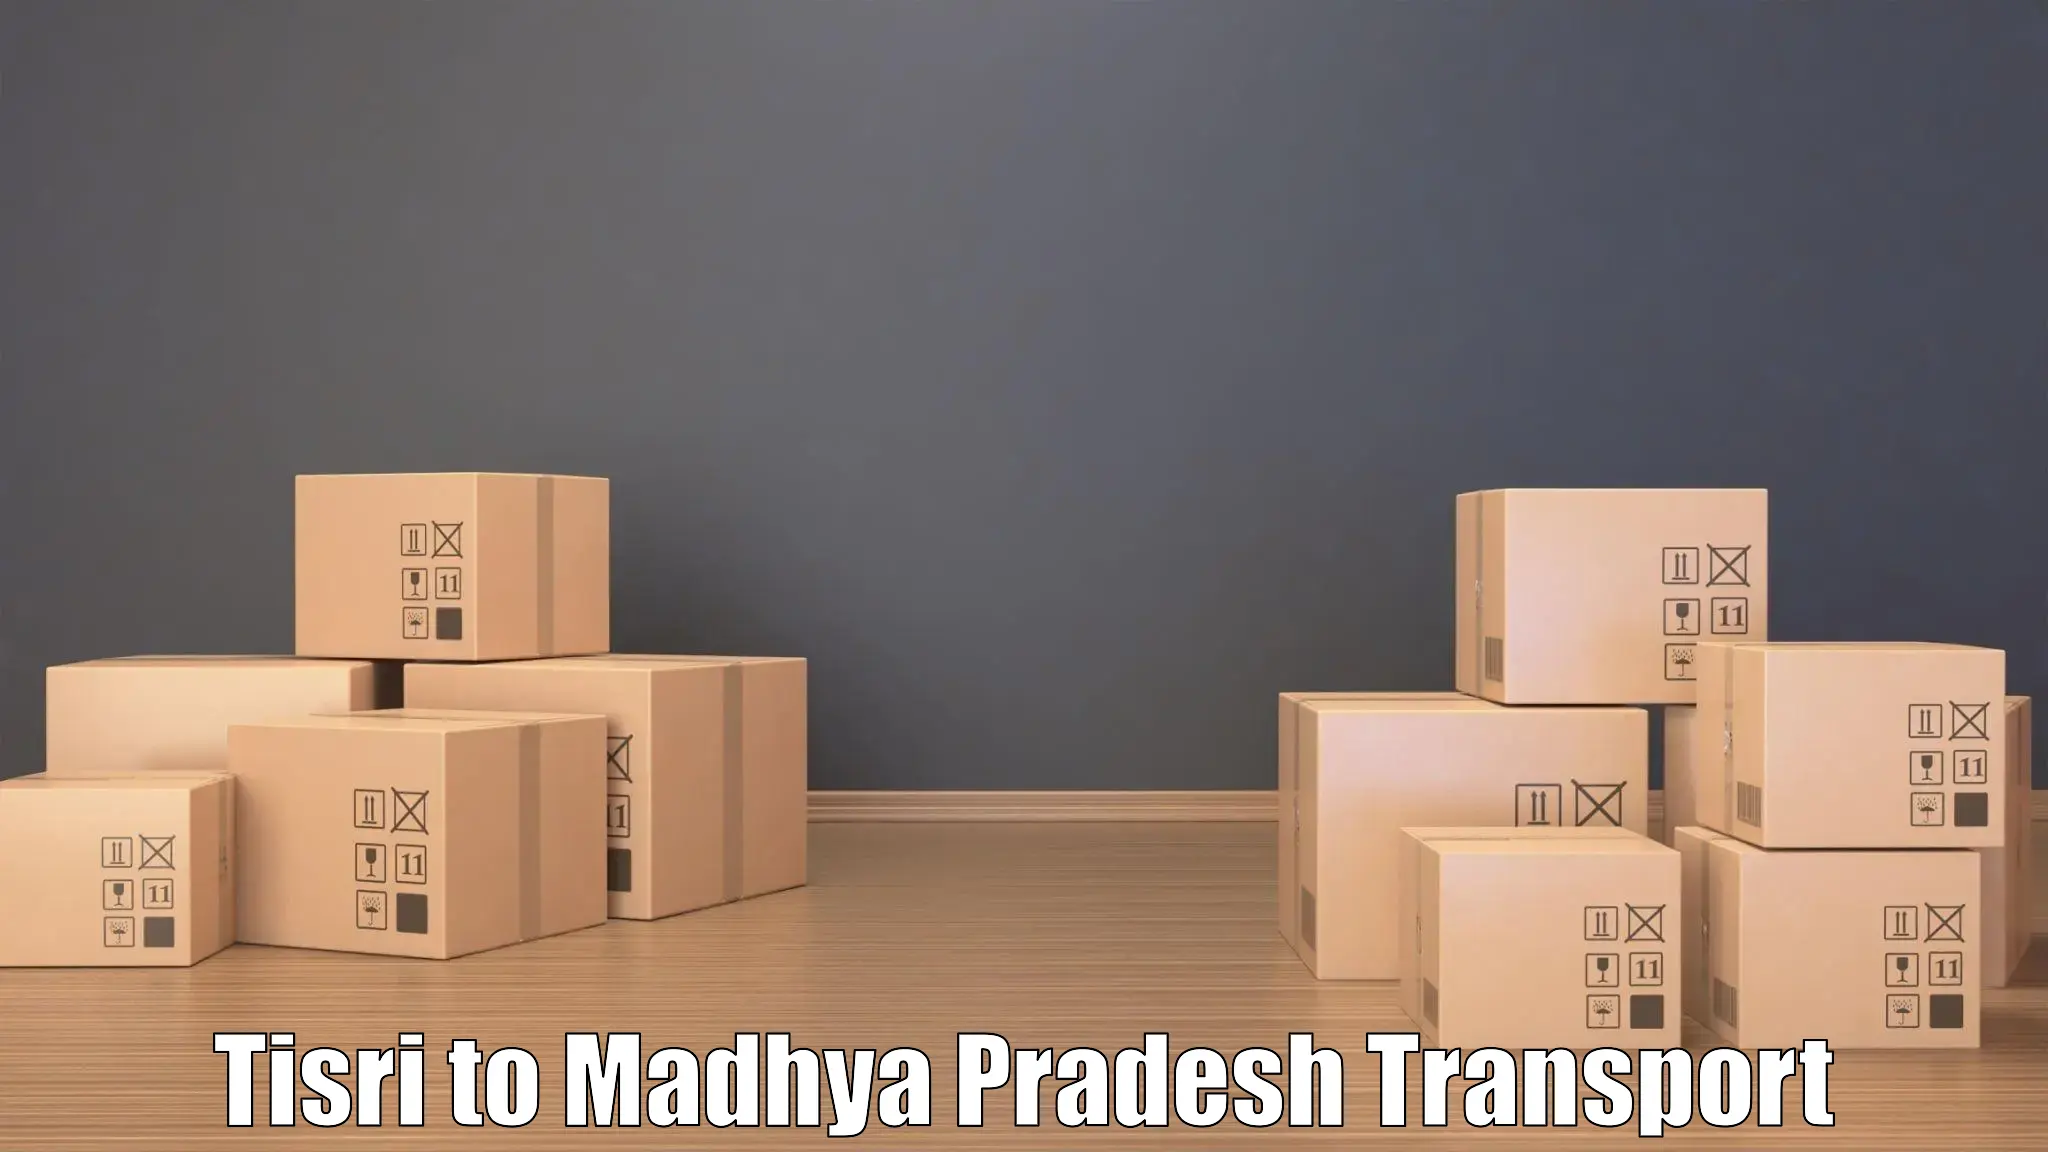 Daily transport service Tisri to Madhya Pradesh